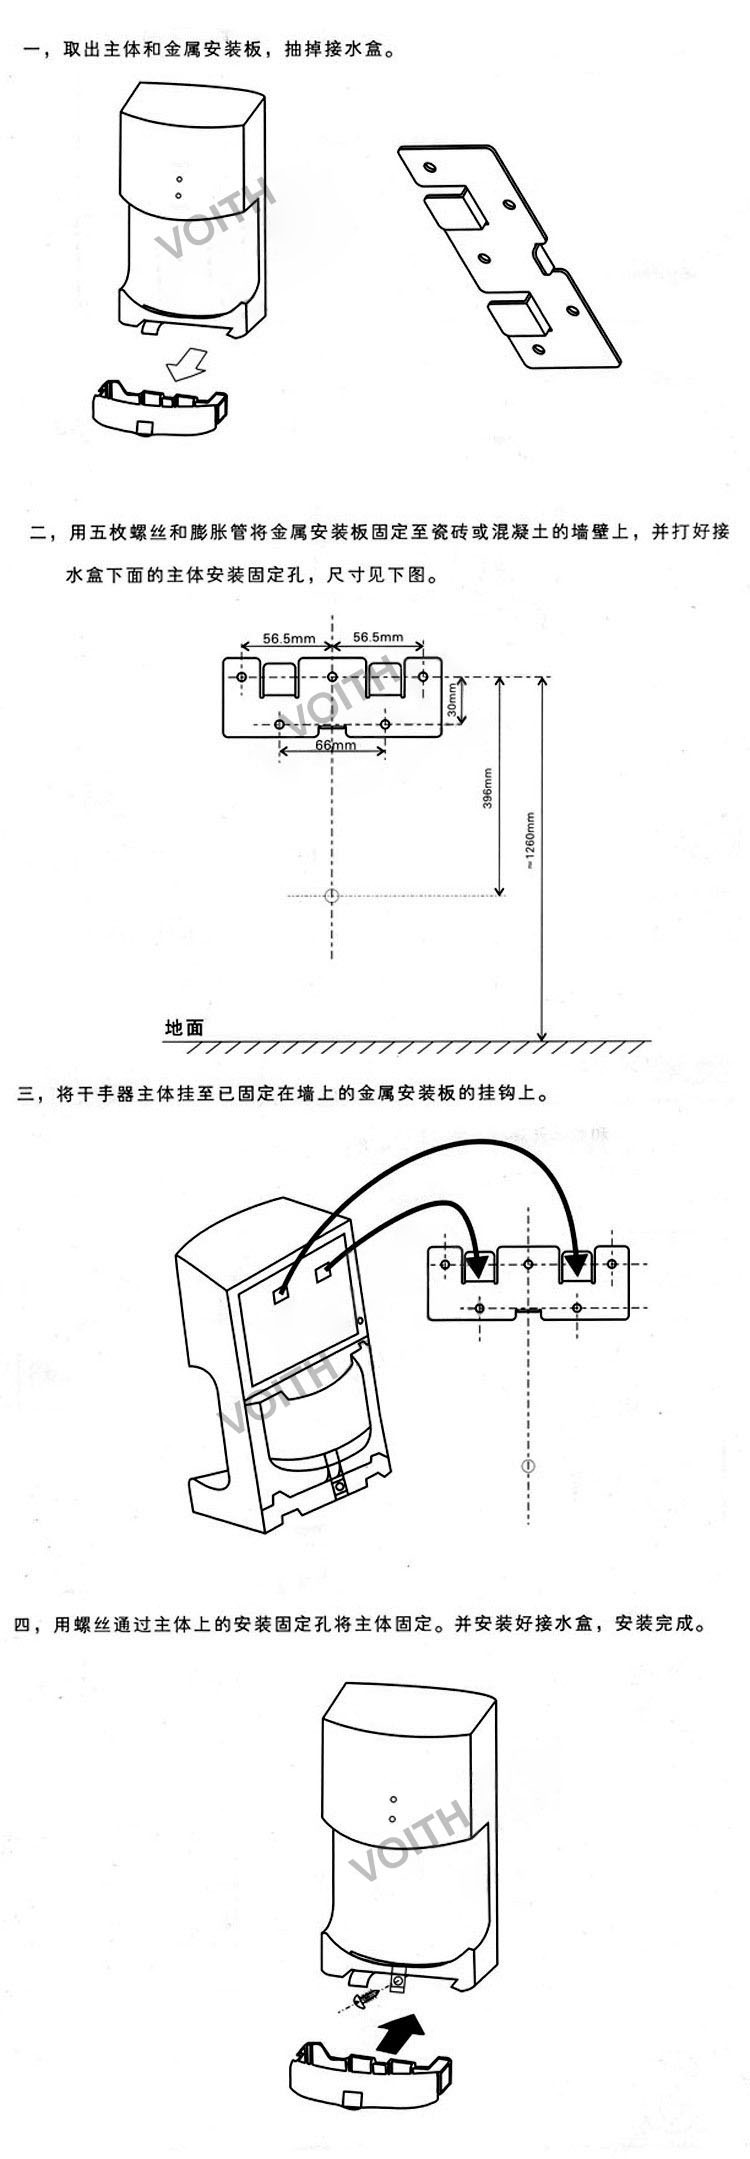 挂壁式款干手机、洗手间专用干手机示例图19